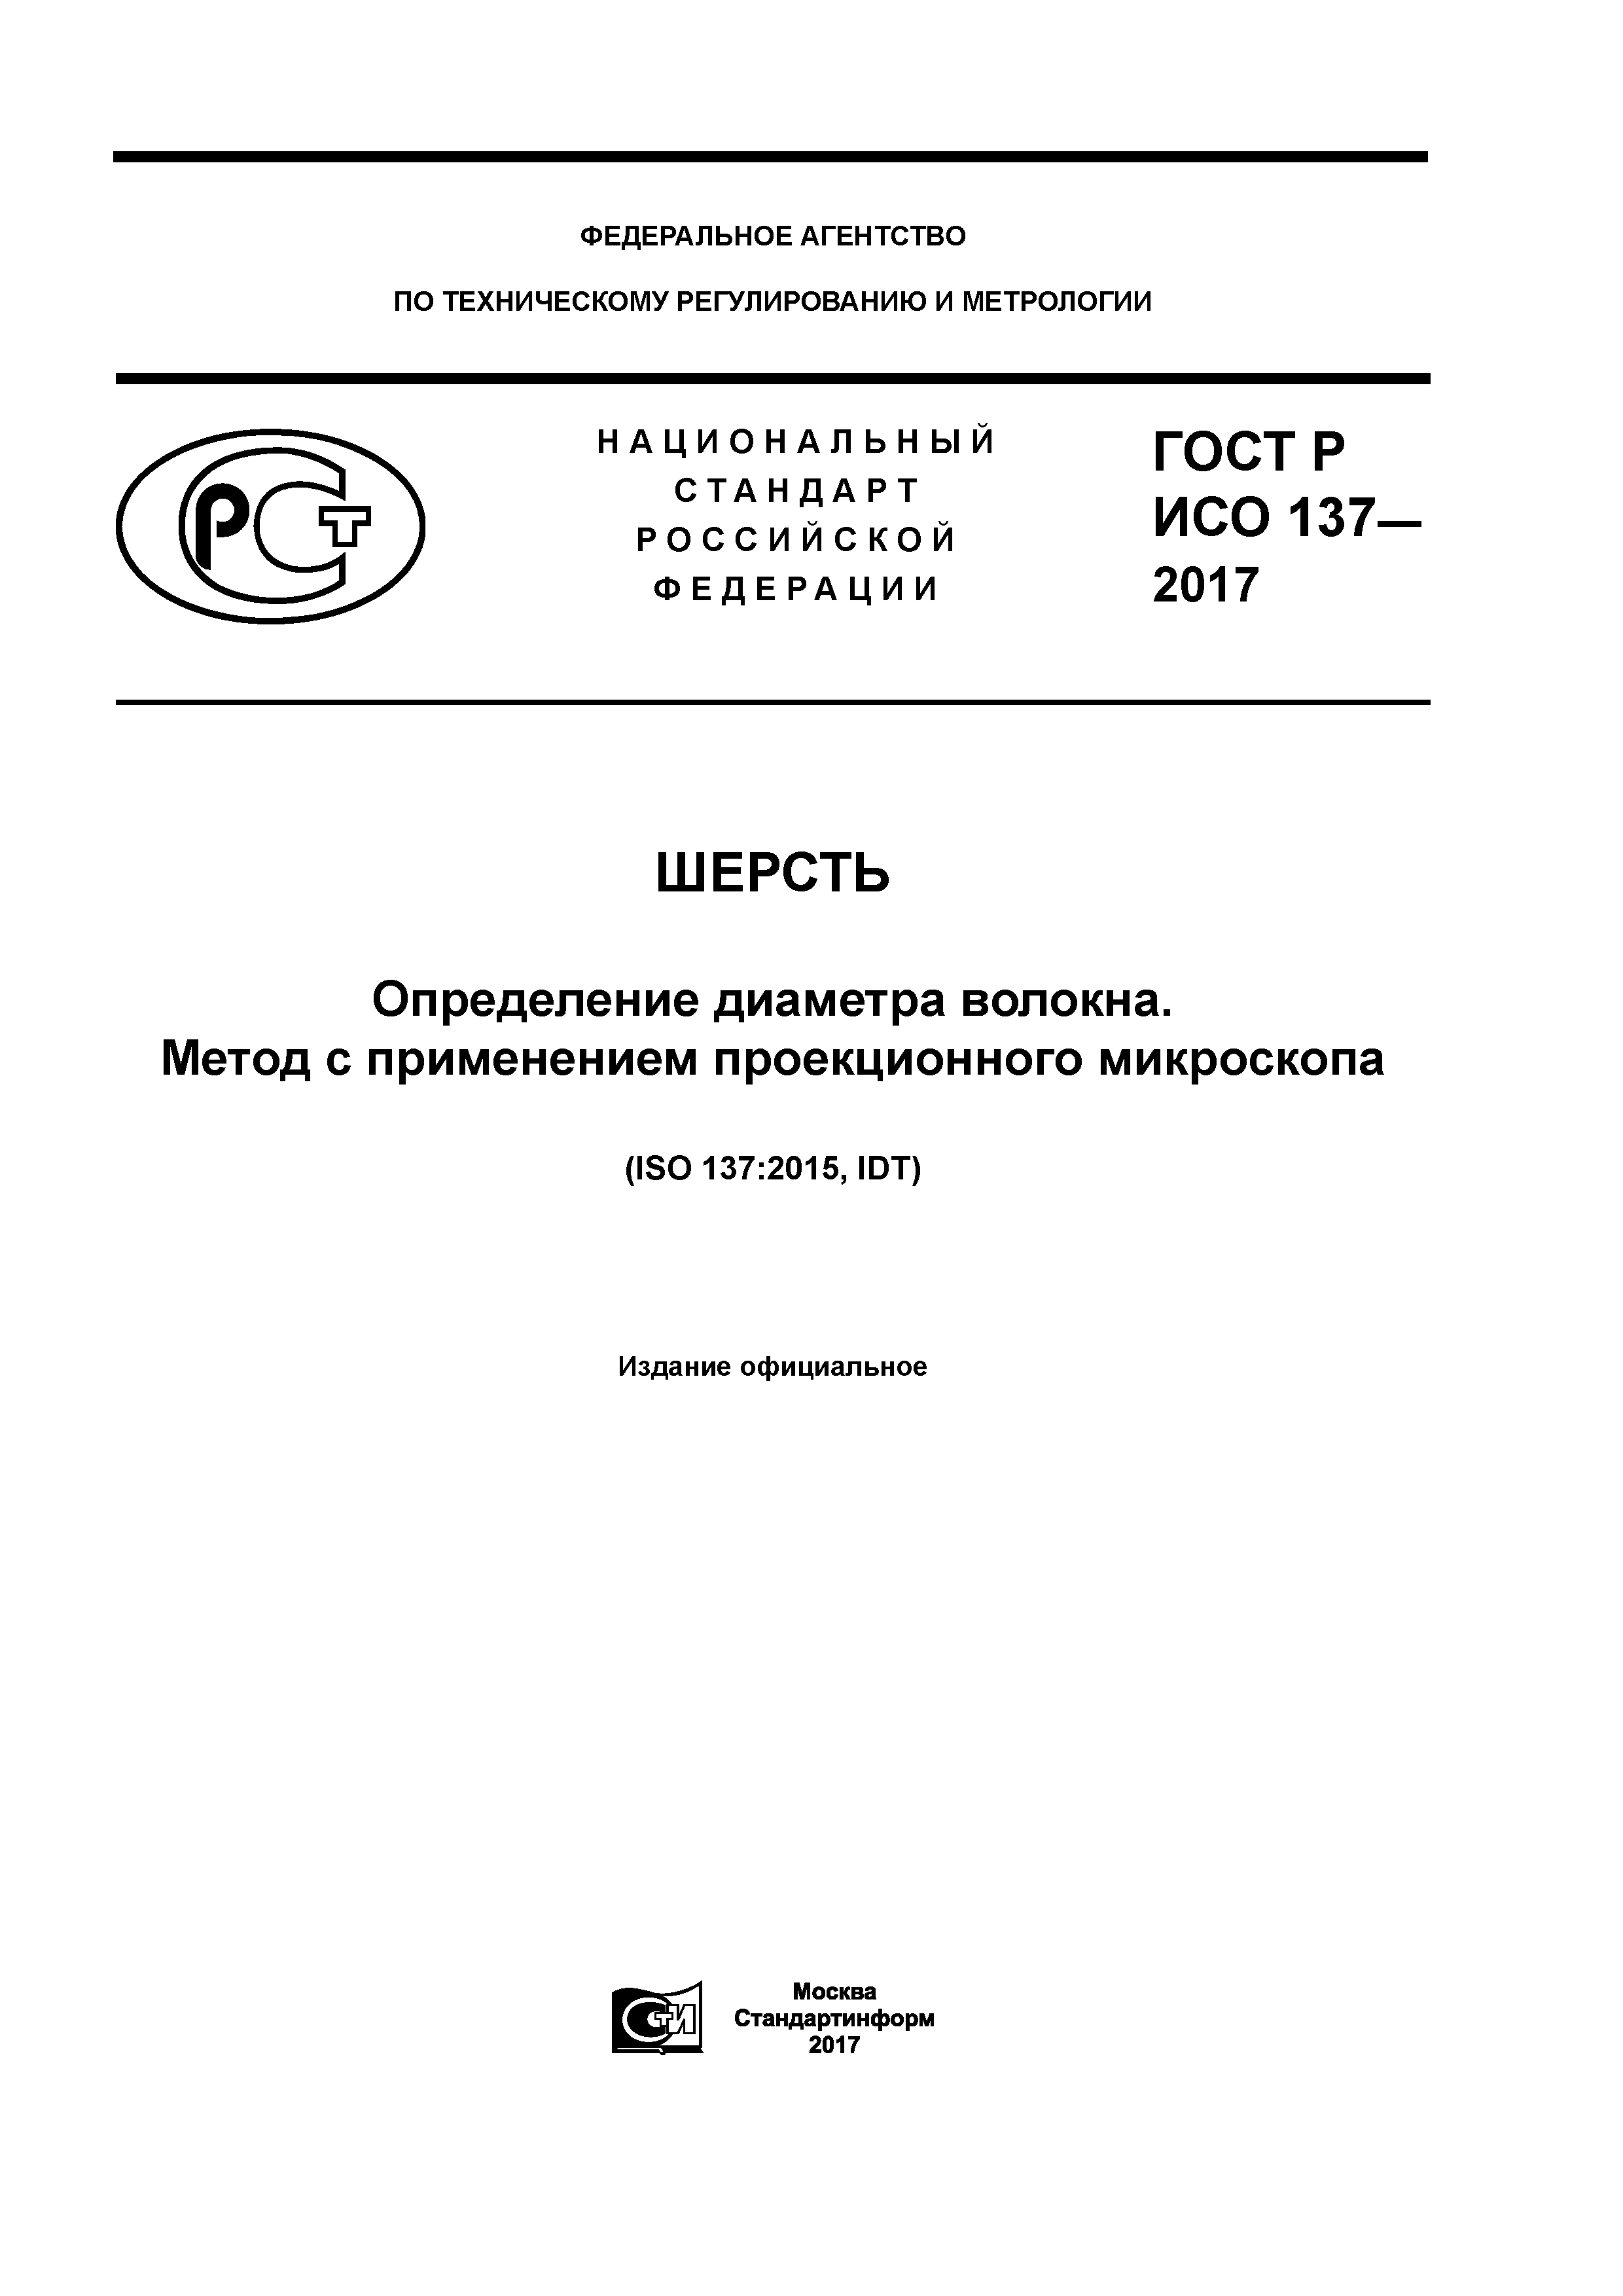 ГОСТ Р ИСО 137-2017